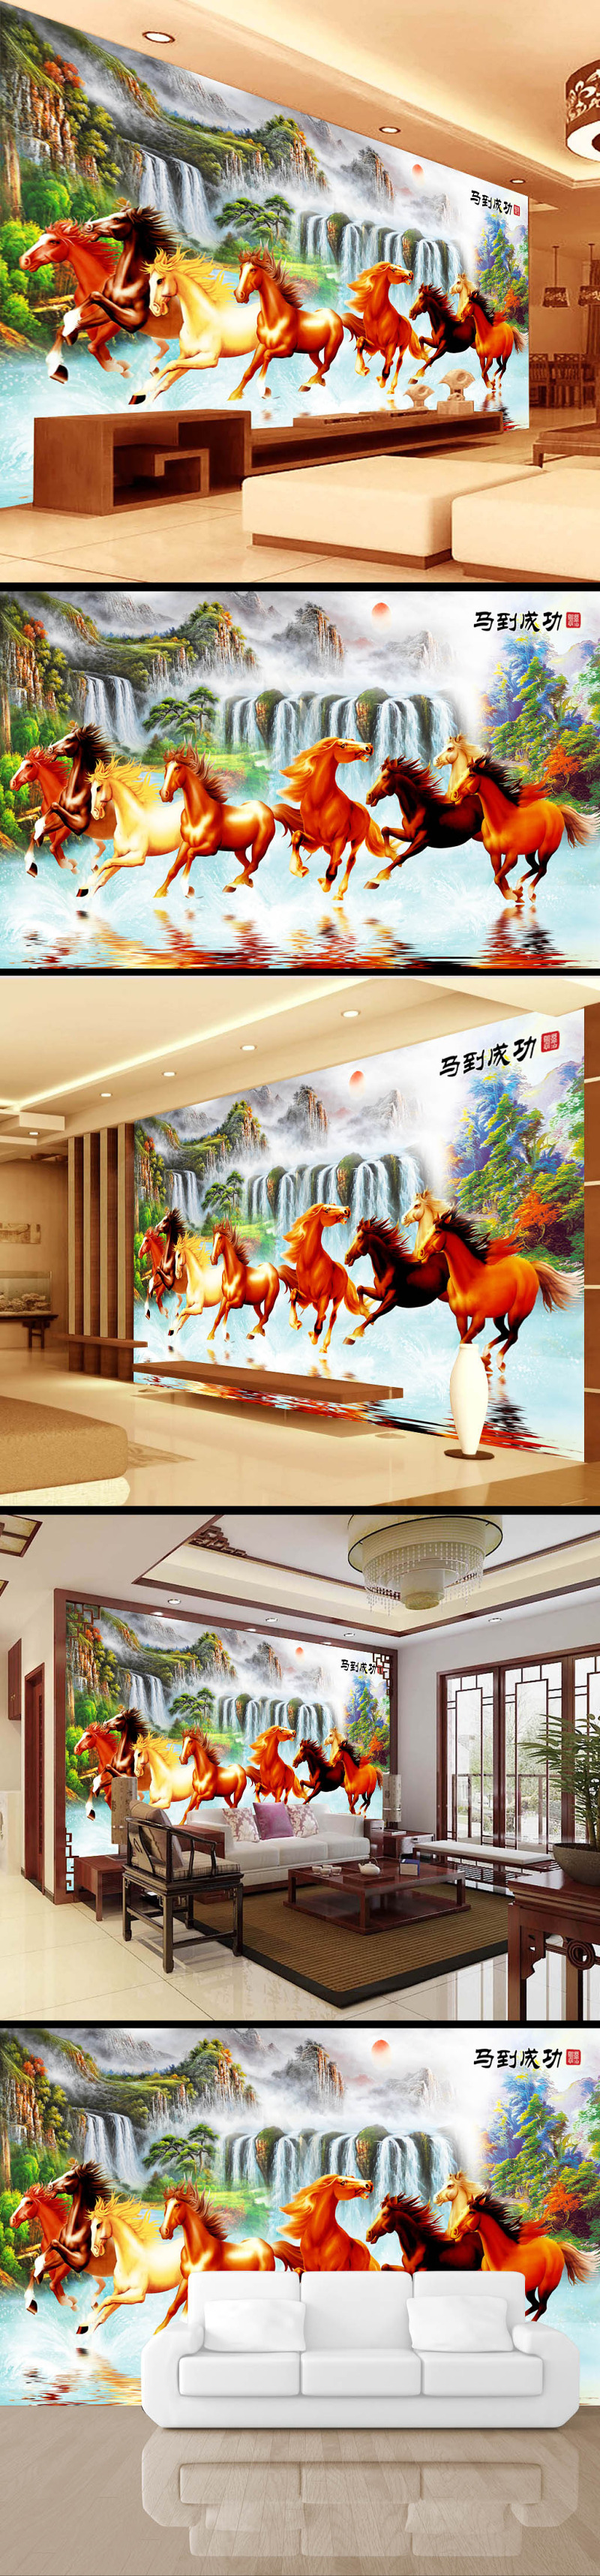 彩绘马到成功中国风电视背景墙